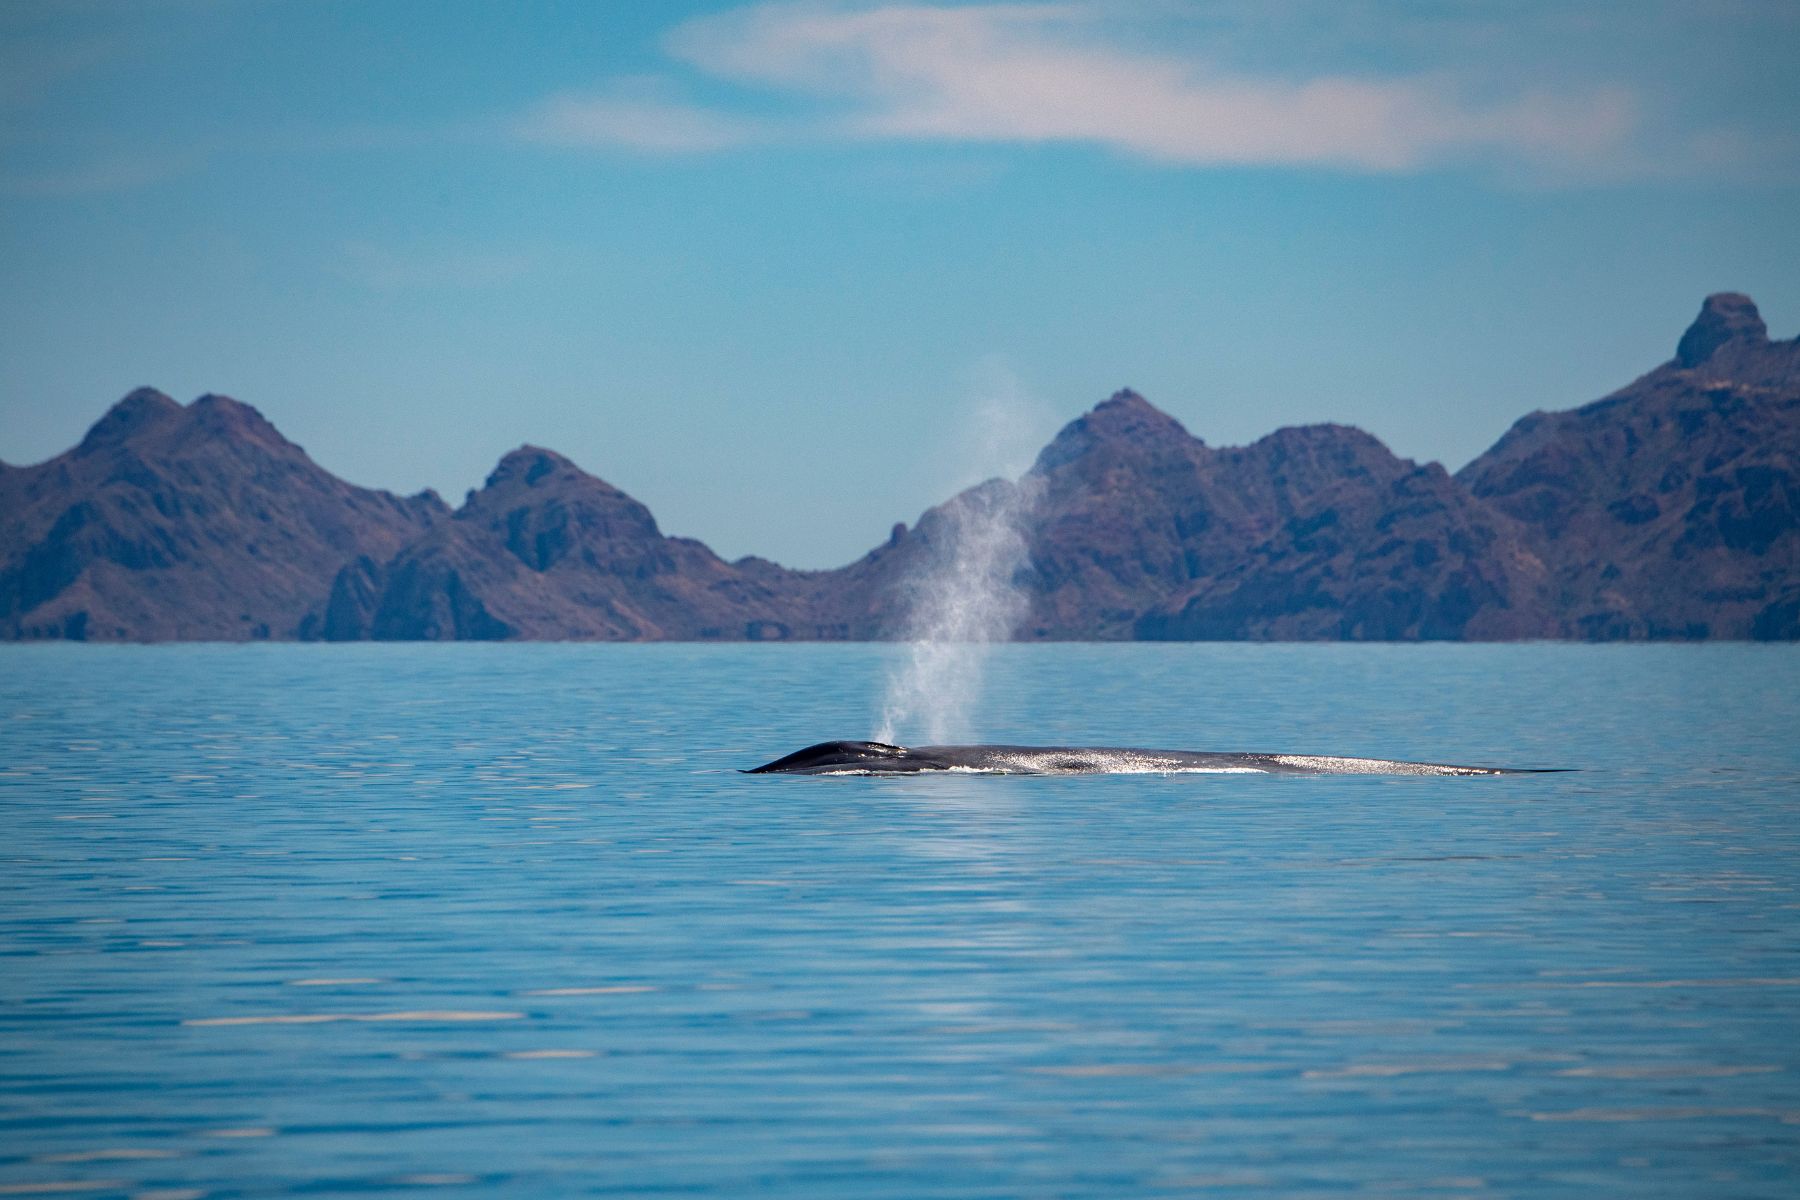 البحث عن الحيتان الزرقاء والرمادية في خليج كاليفورنيا (بحر كورتيس)